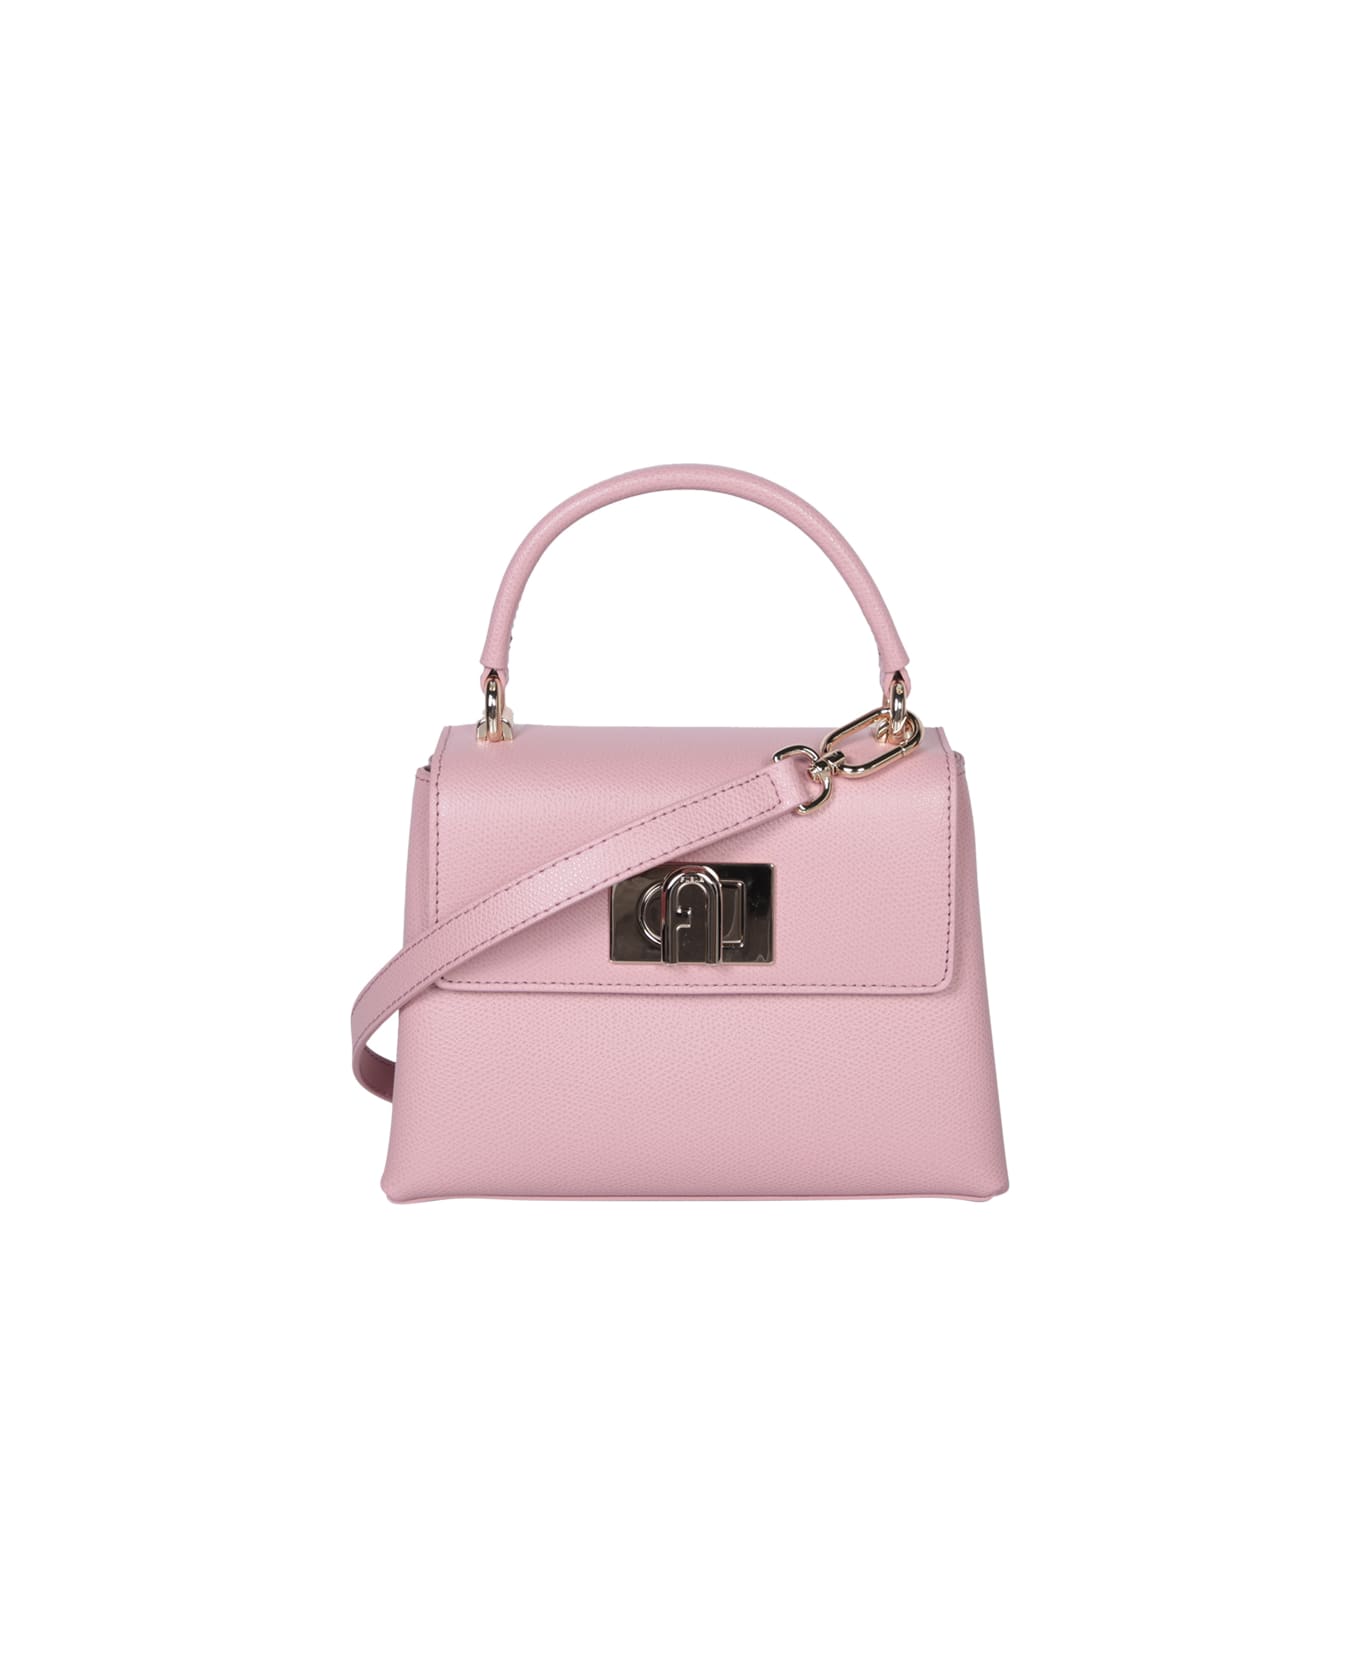 Furla 1927 Mini Top Handle Bag In Pink - Pink